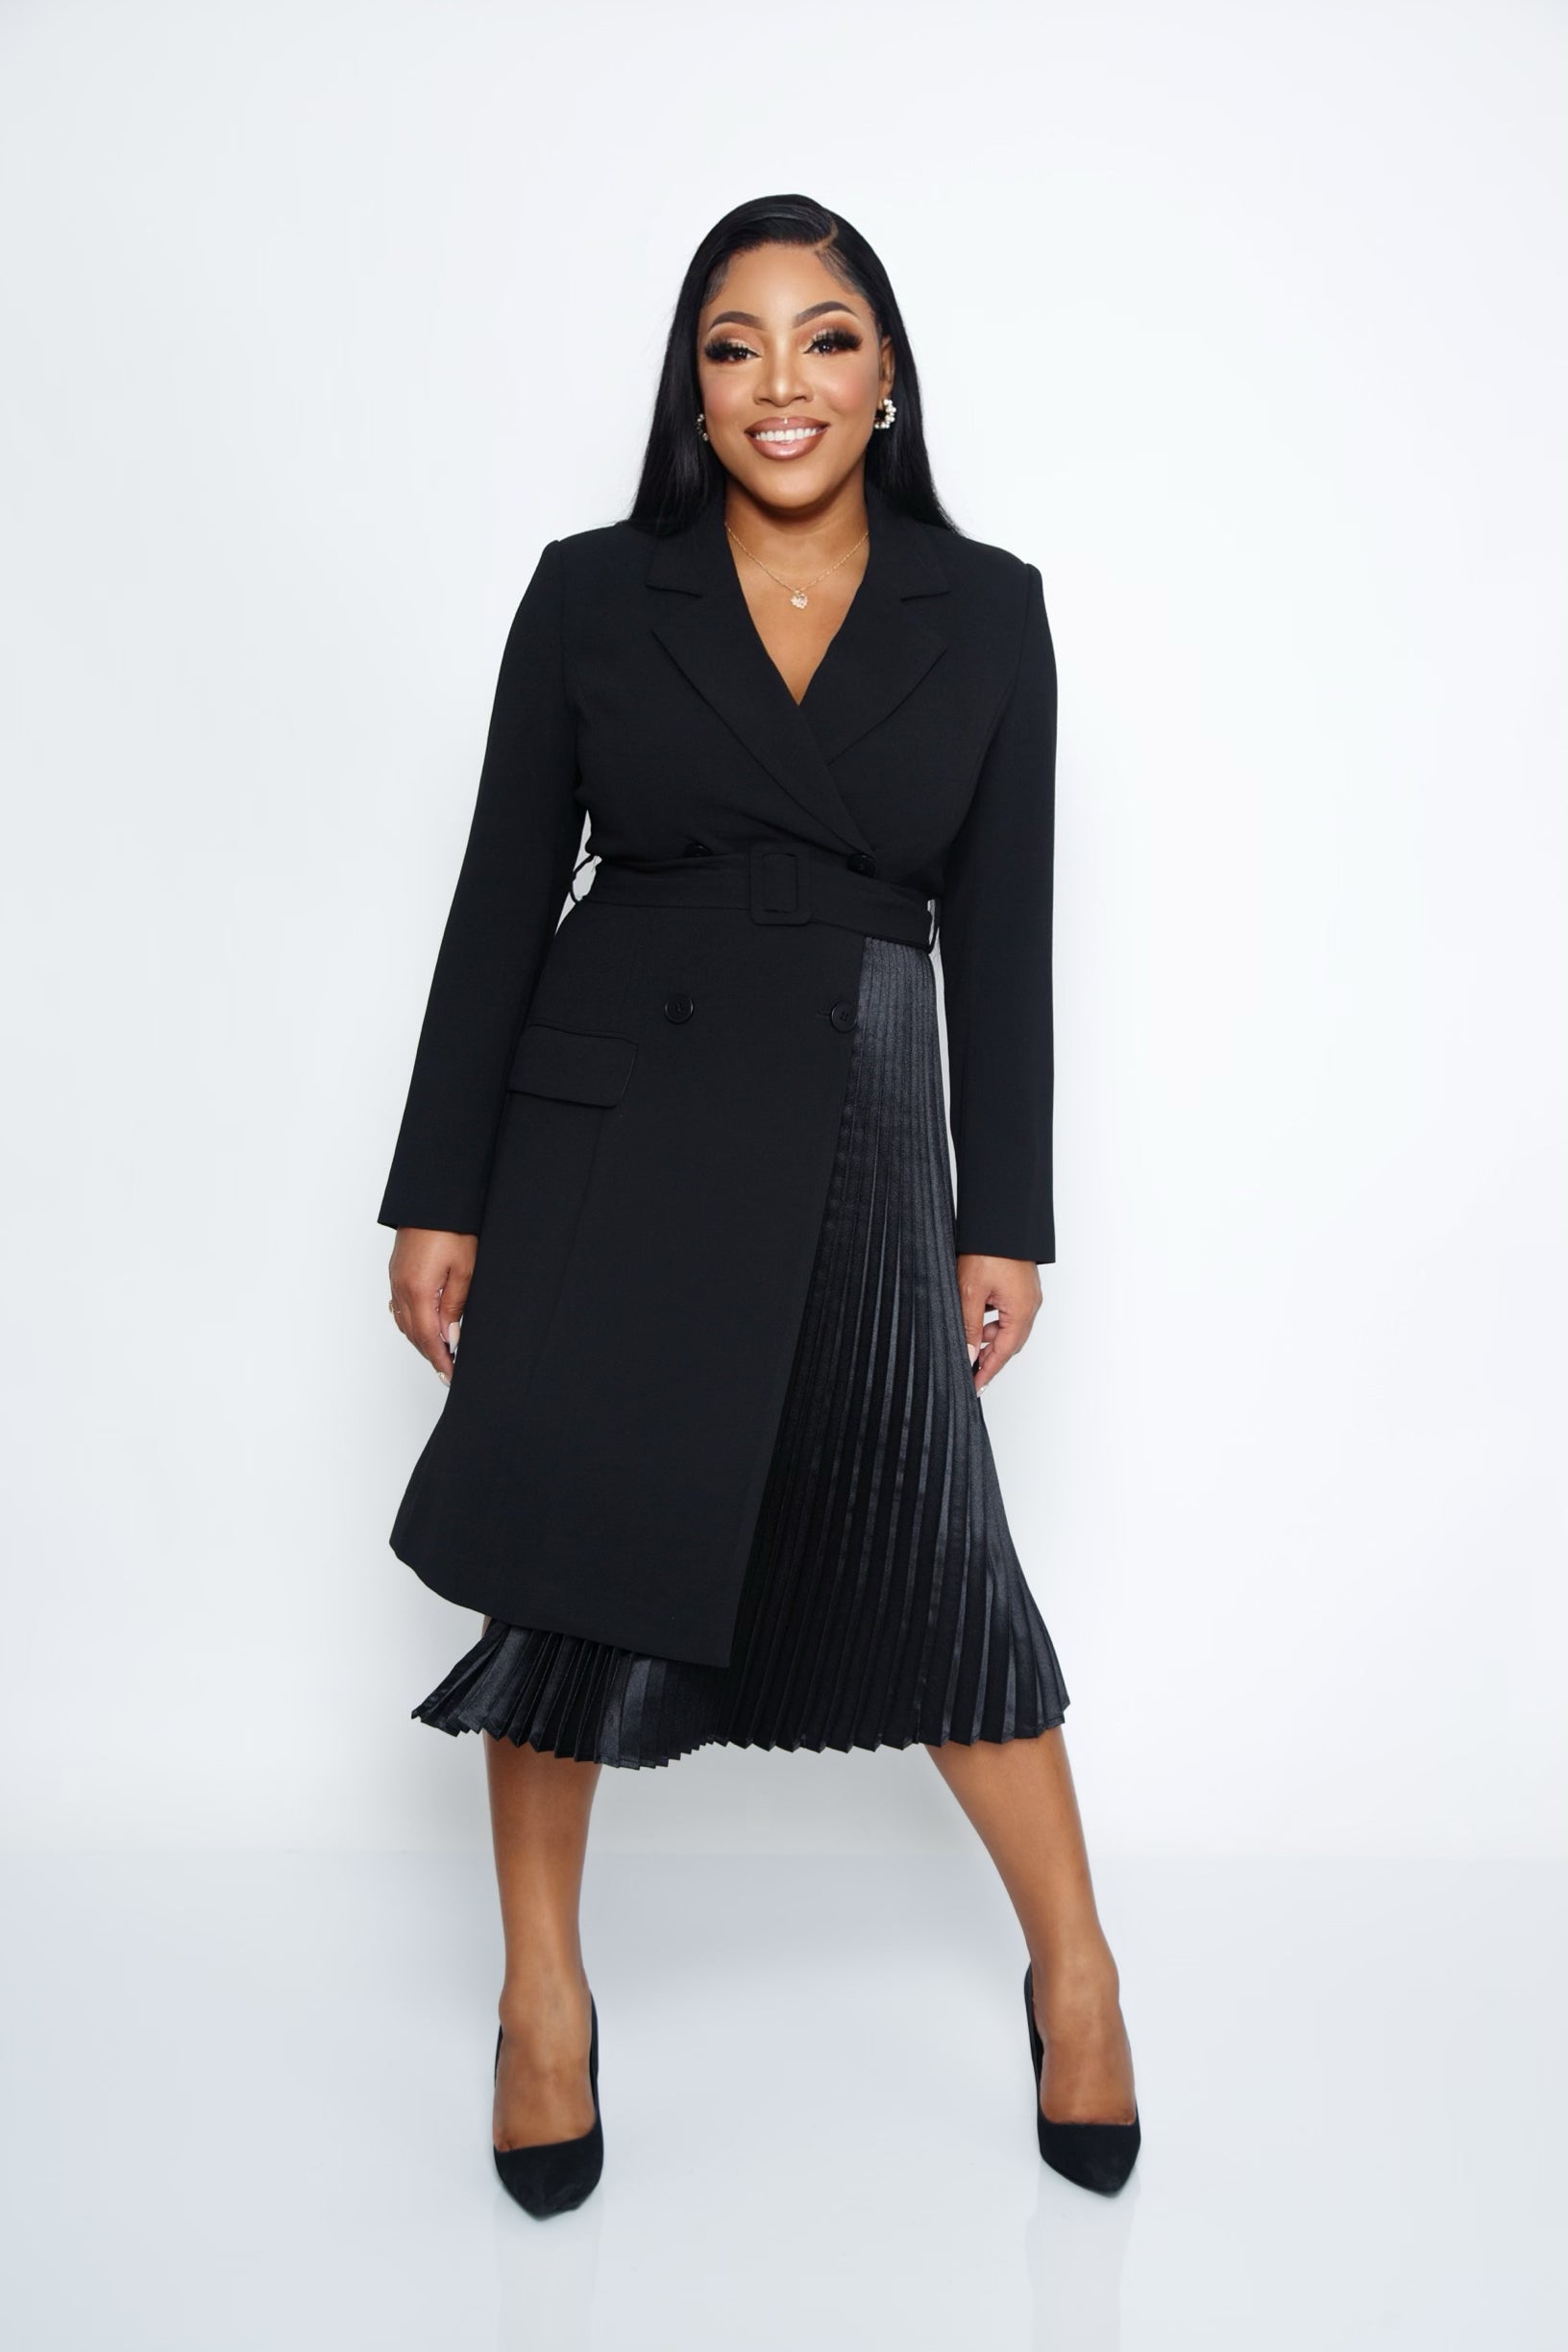 First Lady Luxury Black Blazer Dress